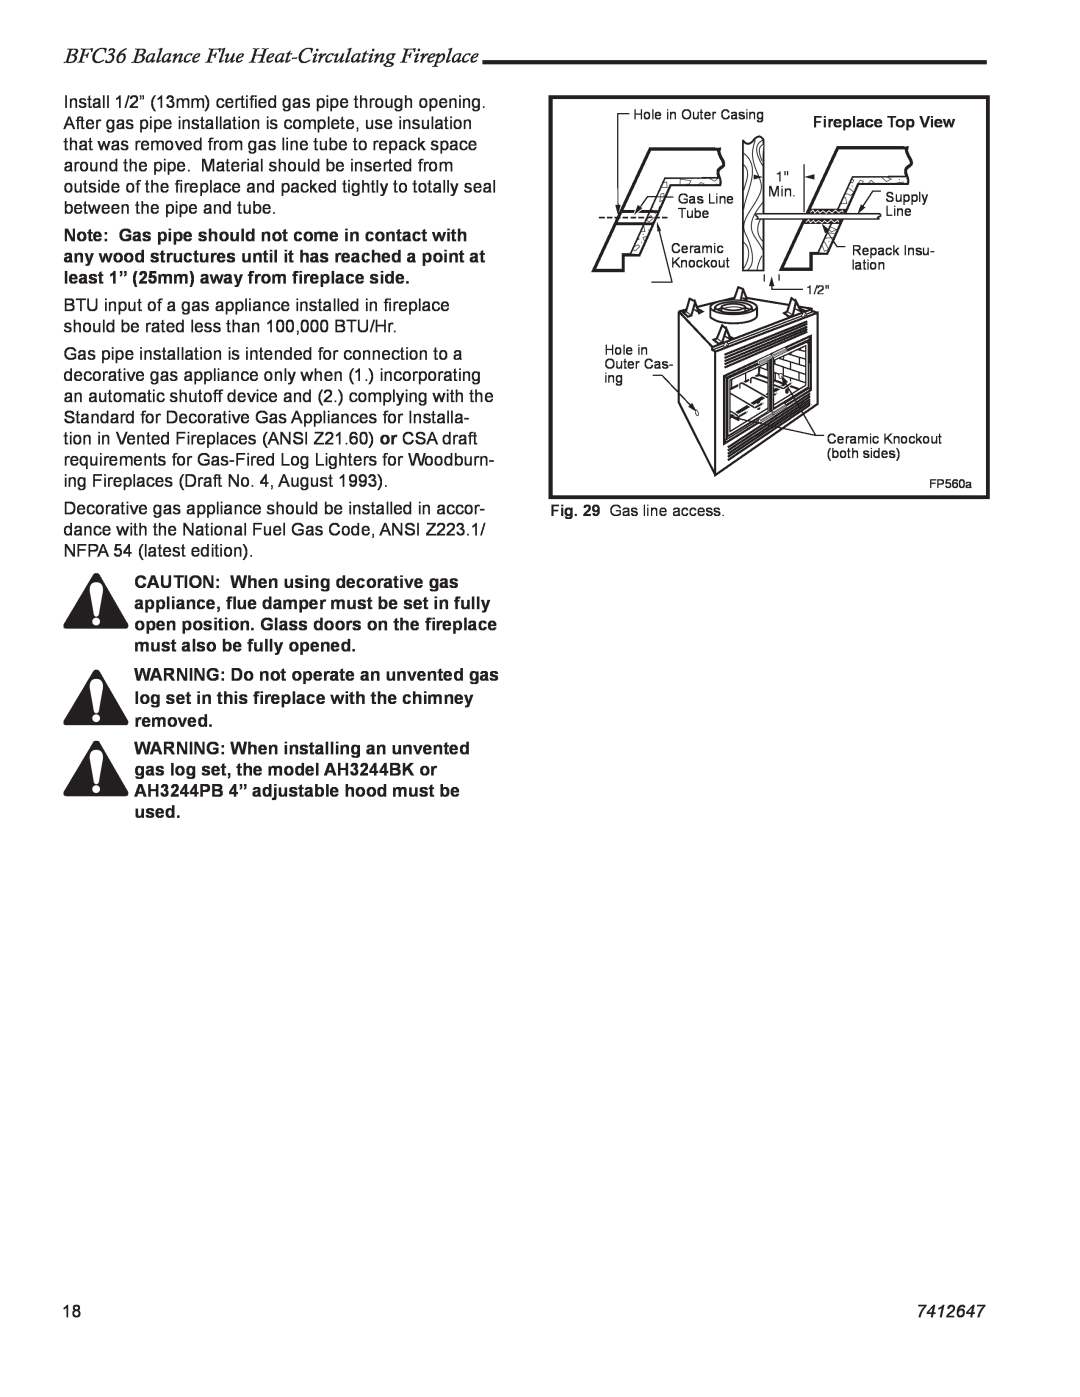 Vermont Casting manual BFC36 Balance Flue Heat-CirculatingFireplace, 7412647 